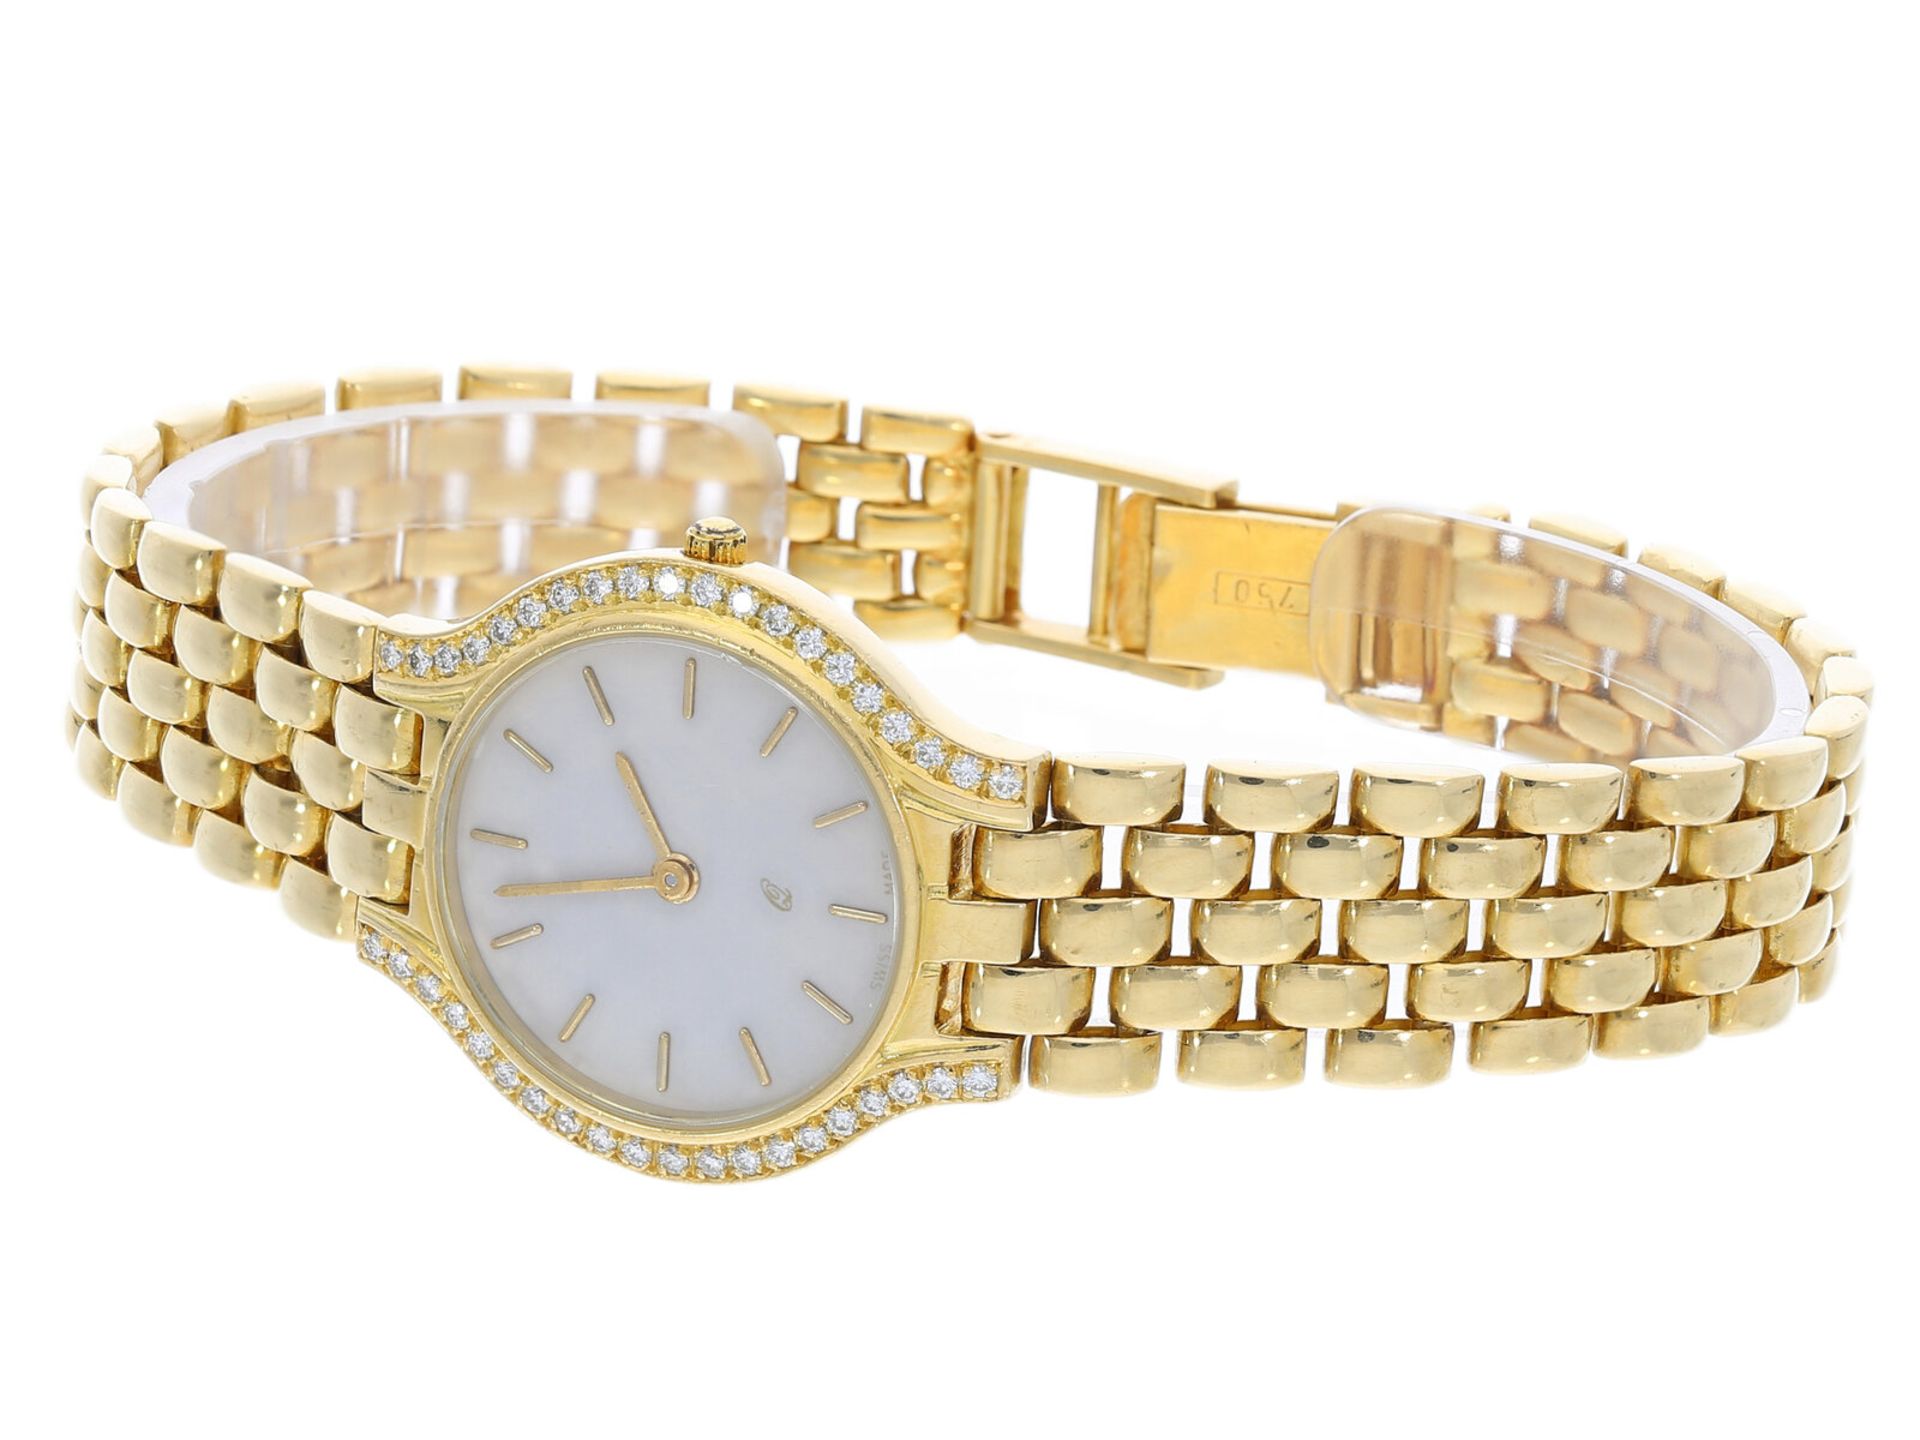 Armbanduhr: Goldene vintage Damenuhr mit Brillantbesatz, 18K Gelbgold - Bild 3 aus 4